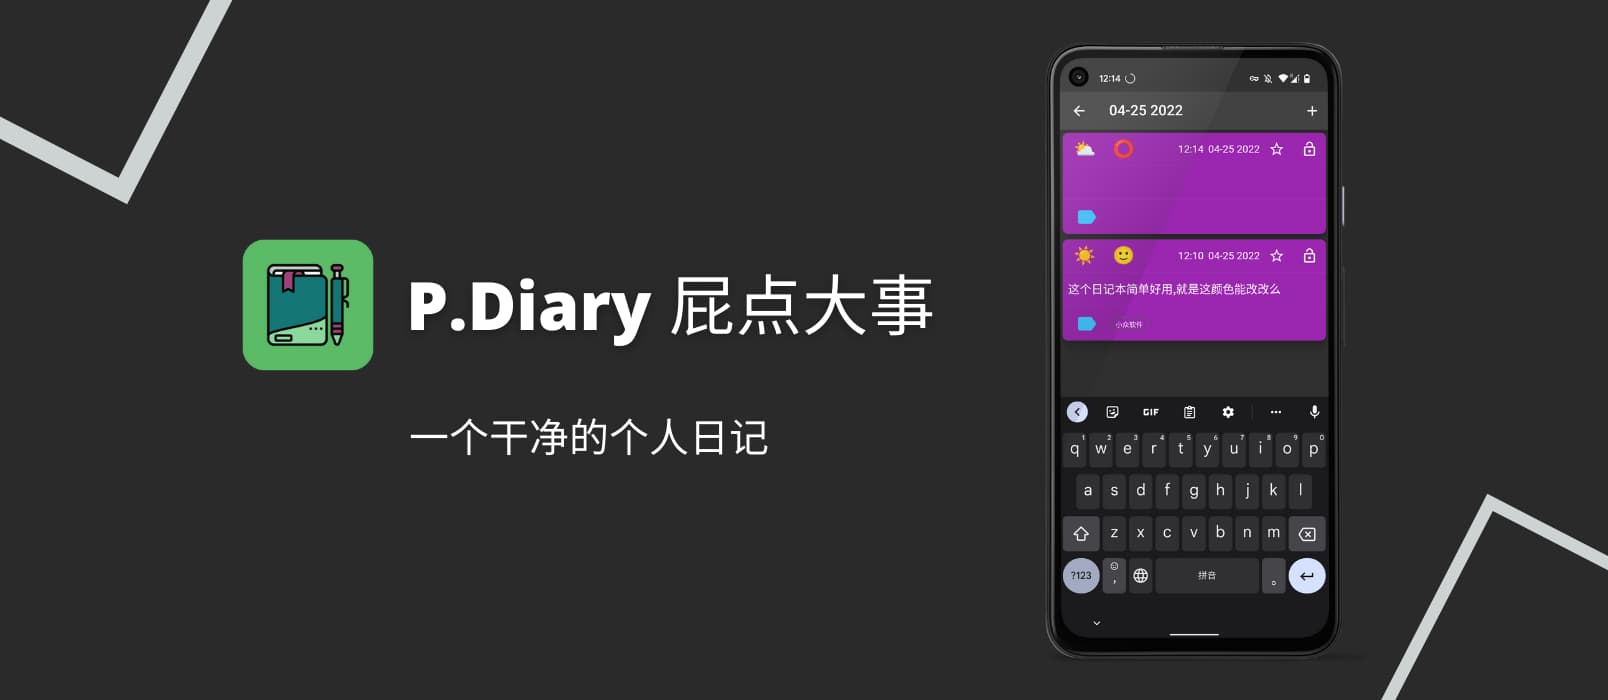 P.Diary - 屁点大事，一个干净的个人日记[Android]